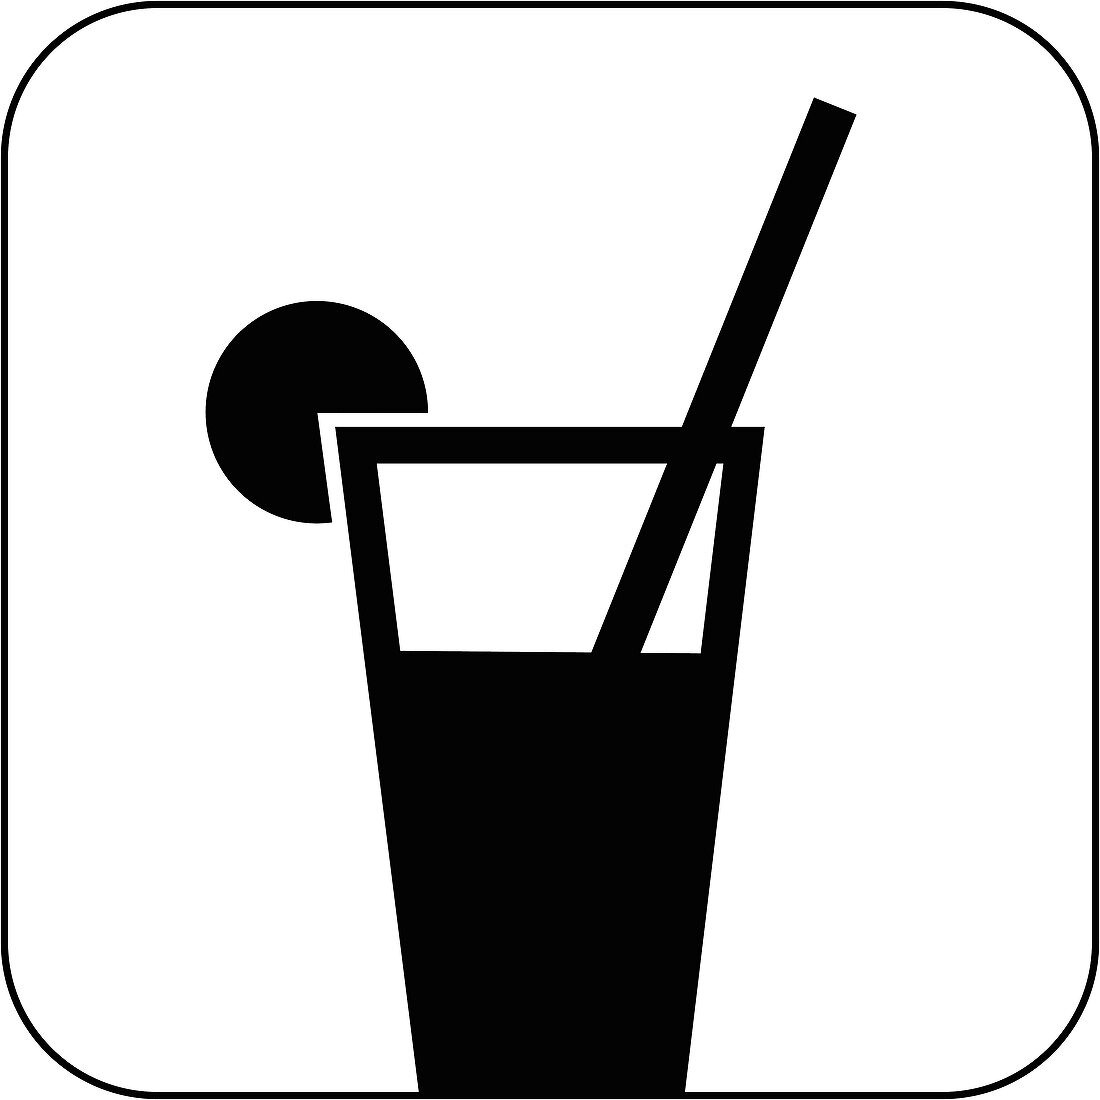 Fruit drink symbol,artwork